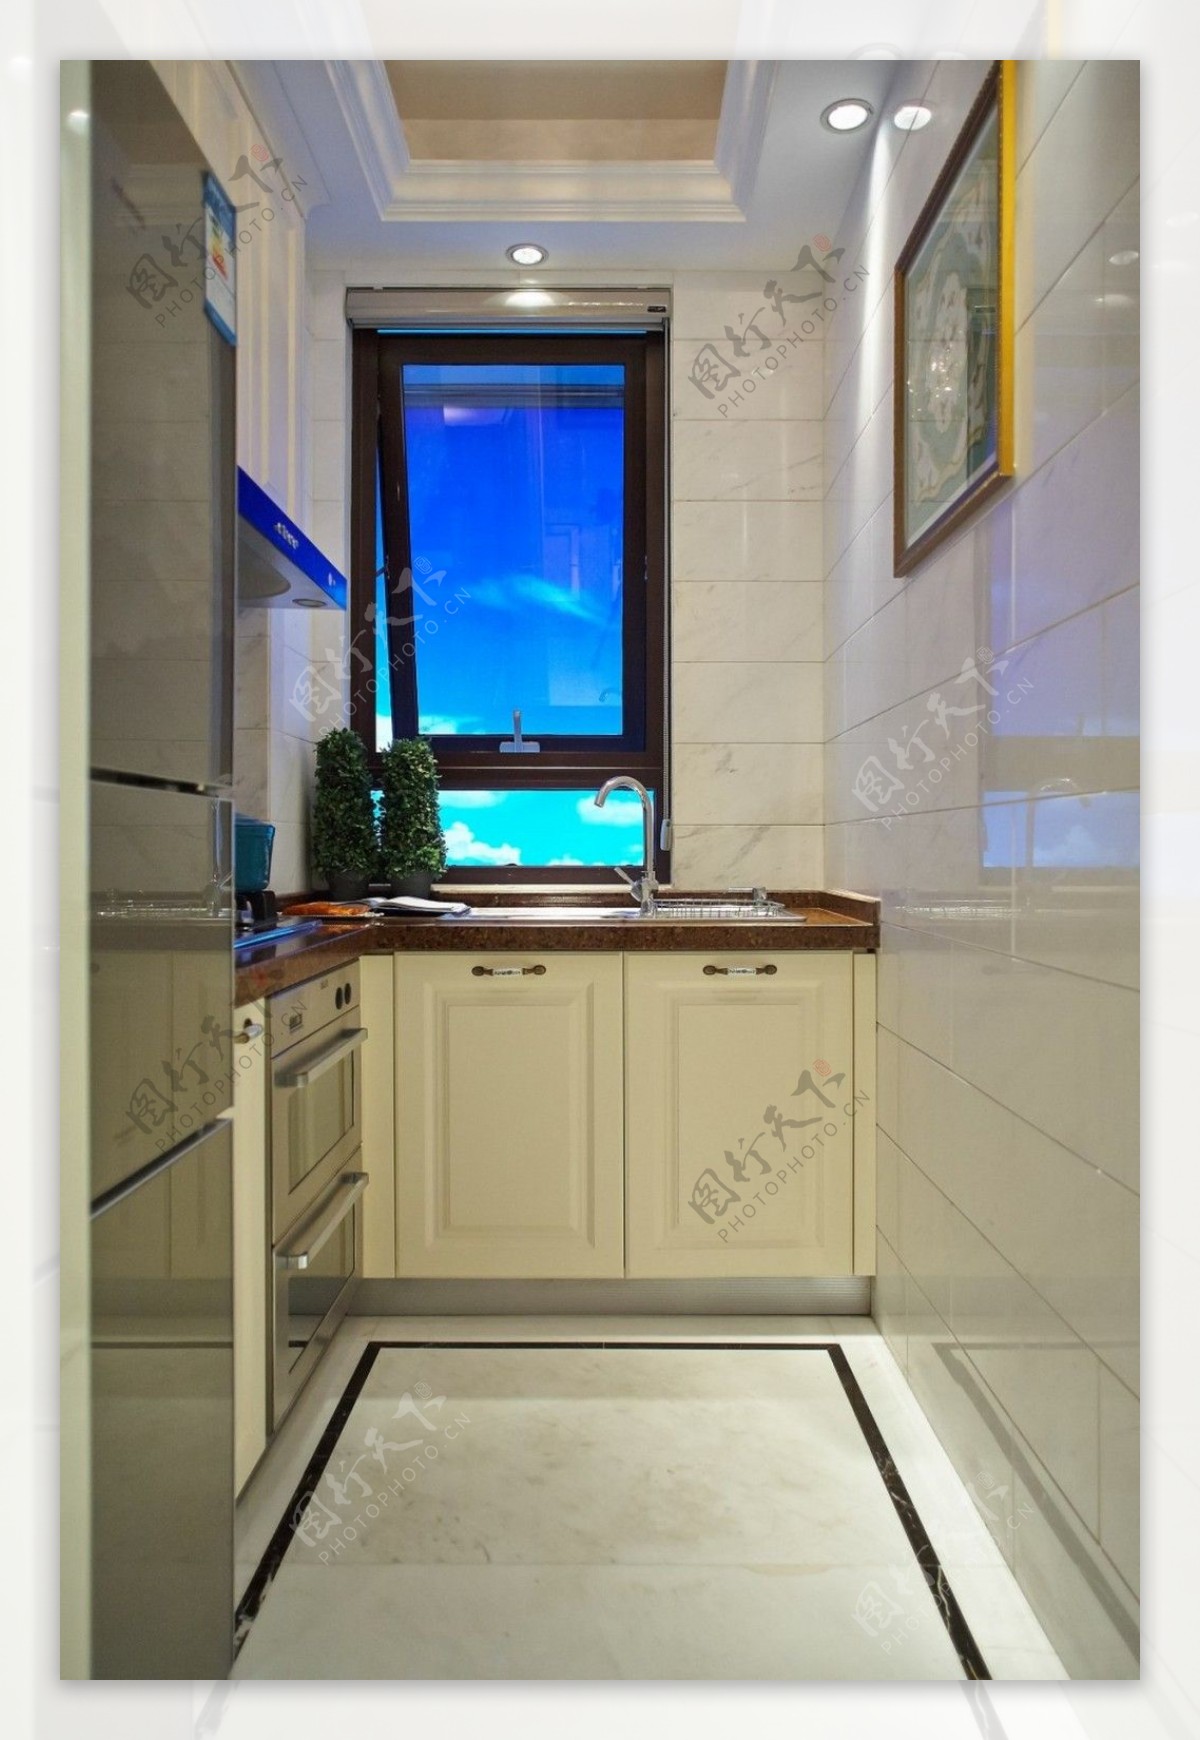 简约风室内设计厨房走廊洗菜池效果图